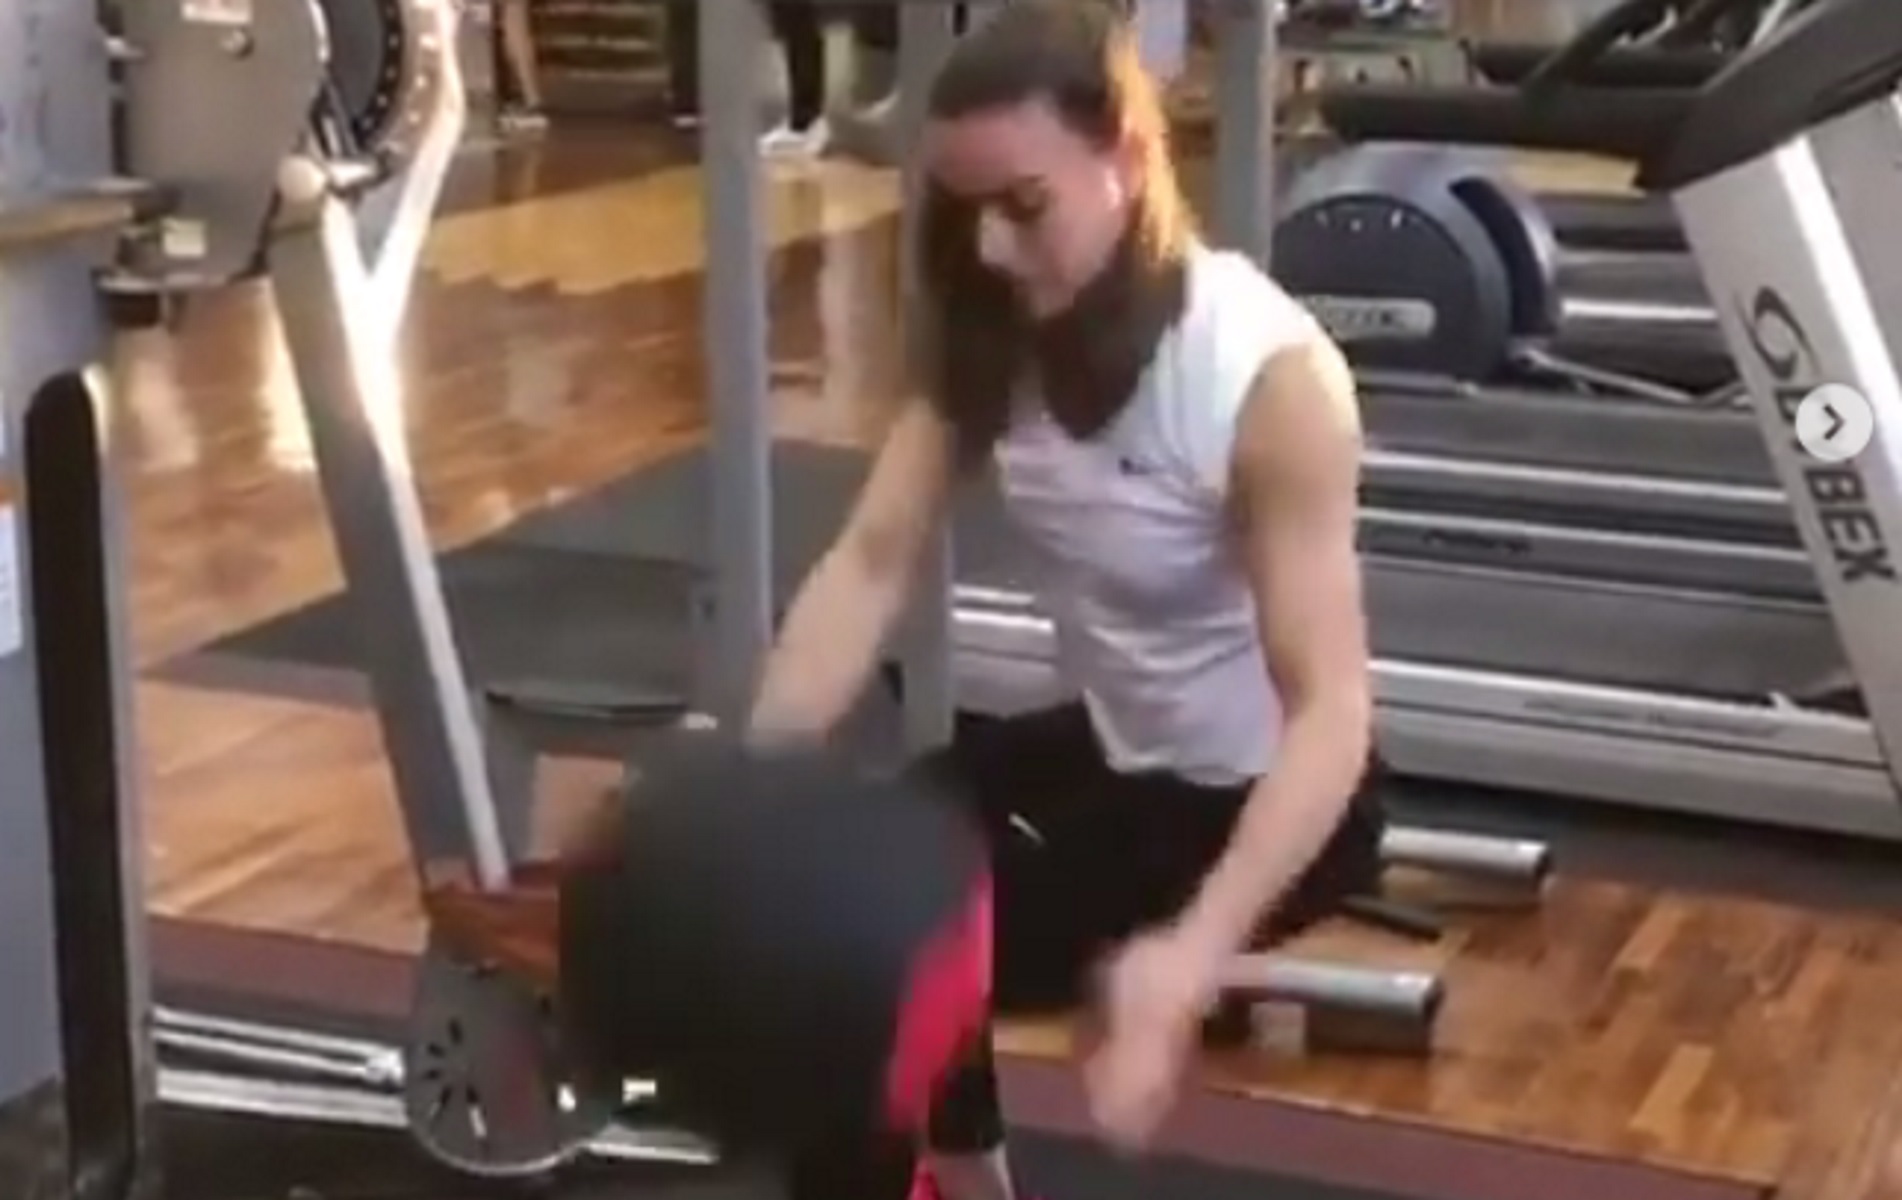 Σάκκαρη: “Λιώνει” στο γυμναστήριο! “Σκληρή” προπόνηση με Παναγιωτόπουλο [video]